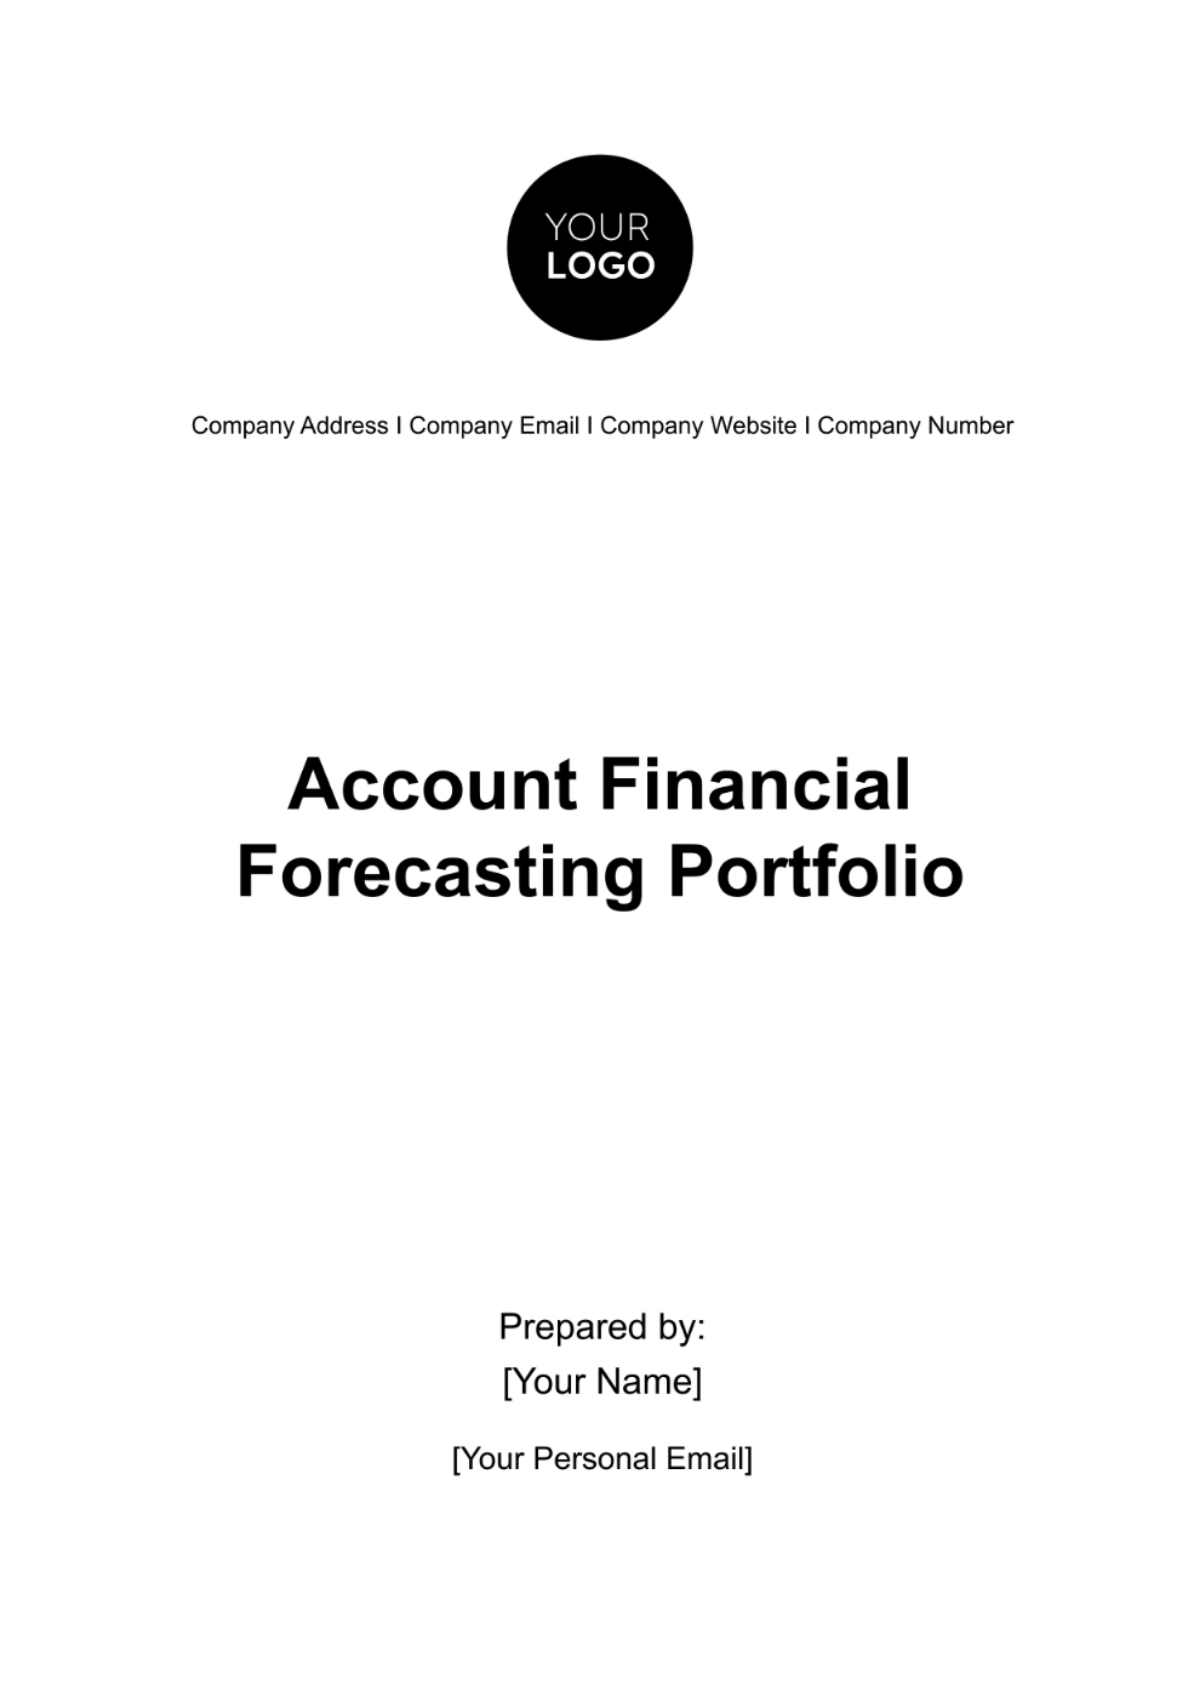 Free Account Financial Forecasting Portfolio Template